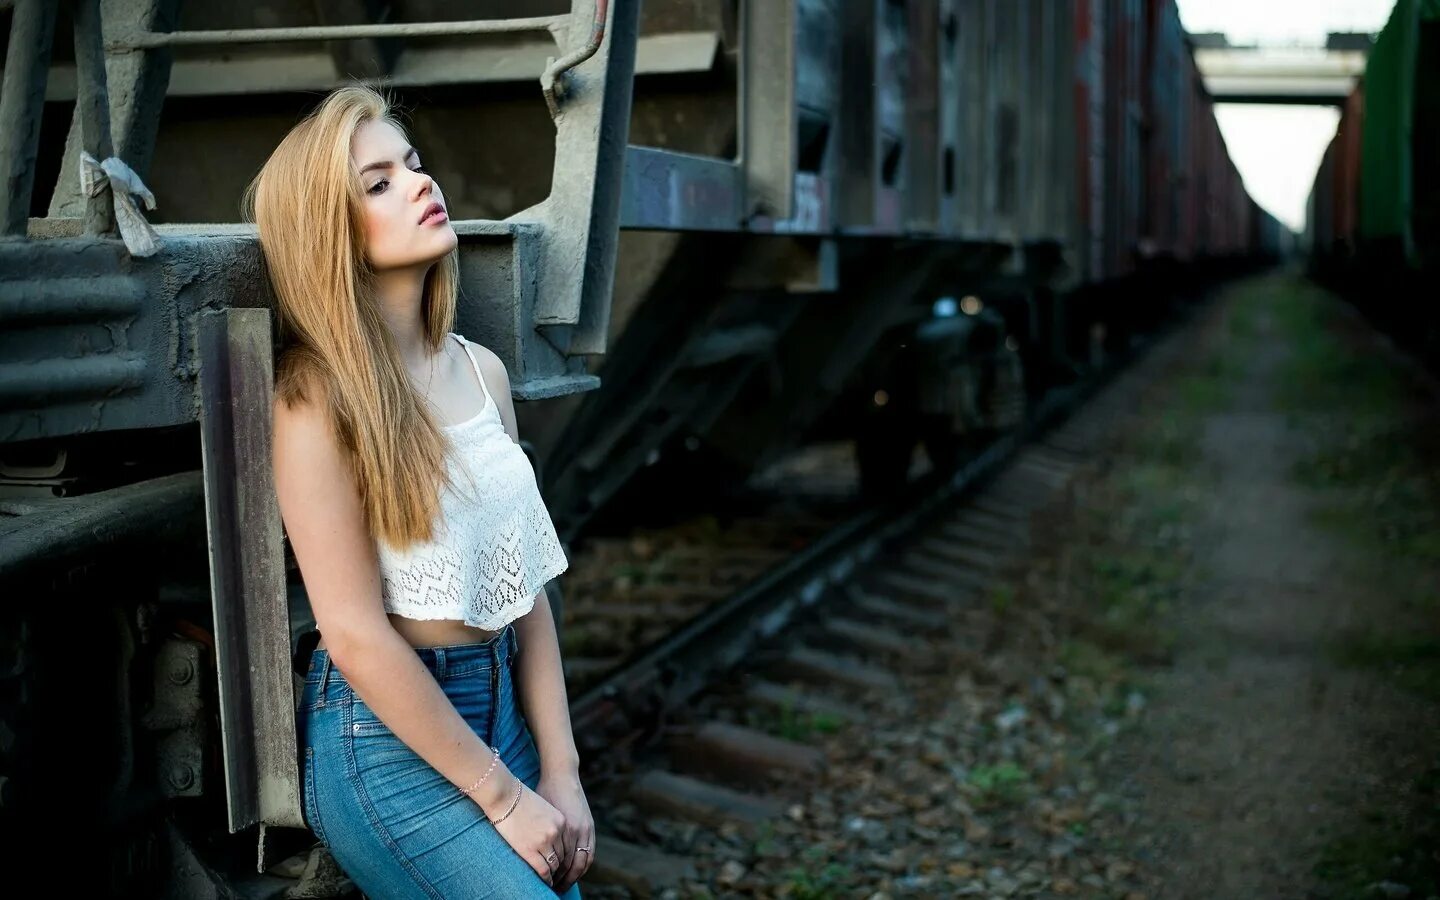 Песню полными вагонами. Фотосессия на рельсах. Красивые девушки на рельсах. Фотосет на железной дороге. Девушка на железной дороге.